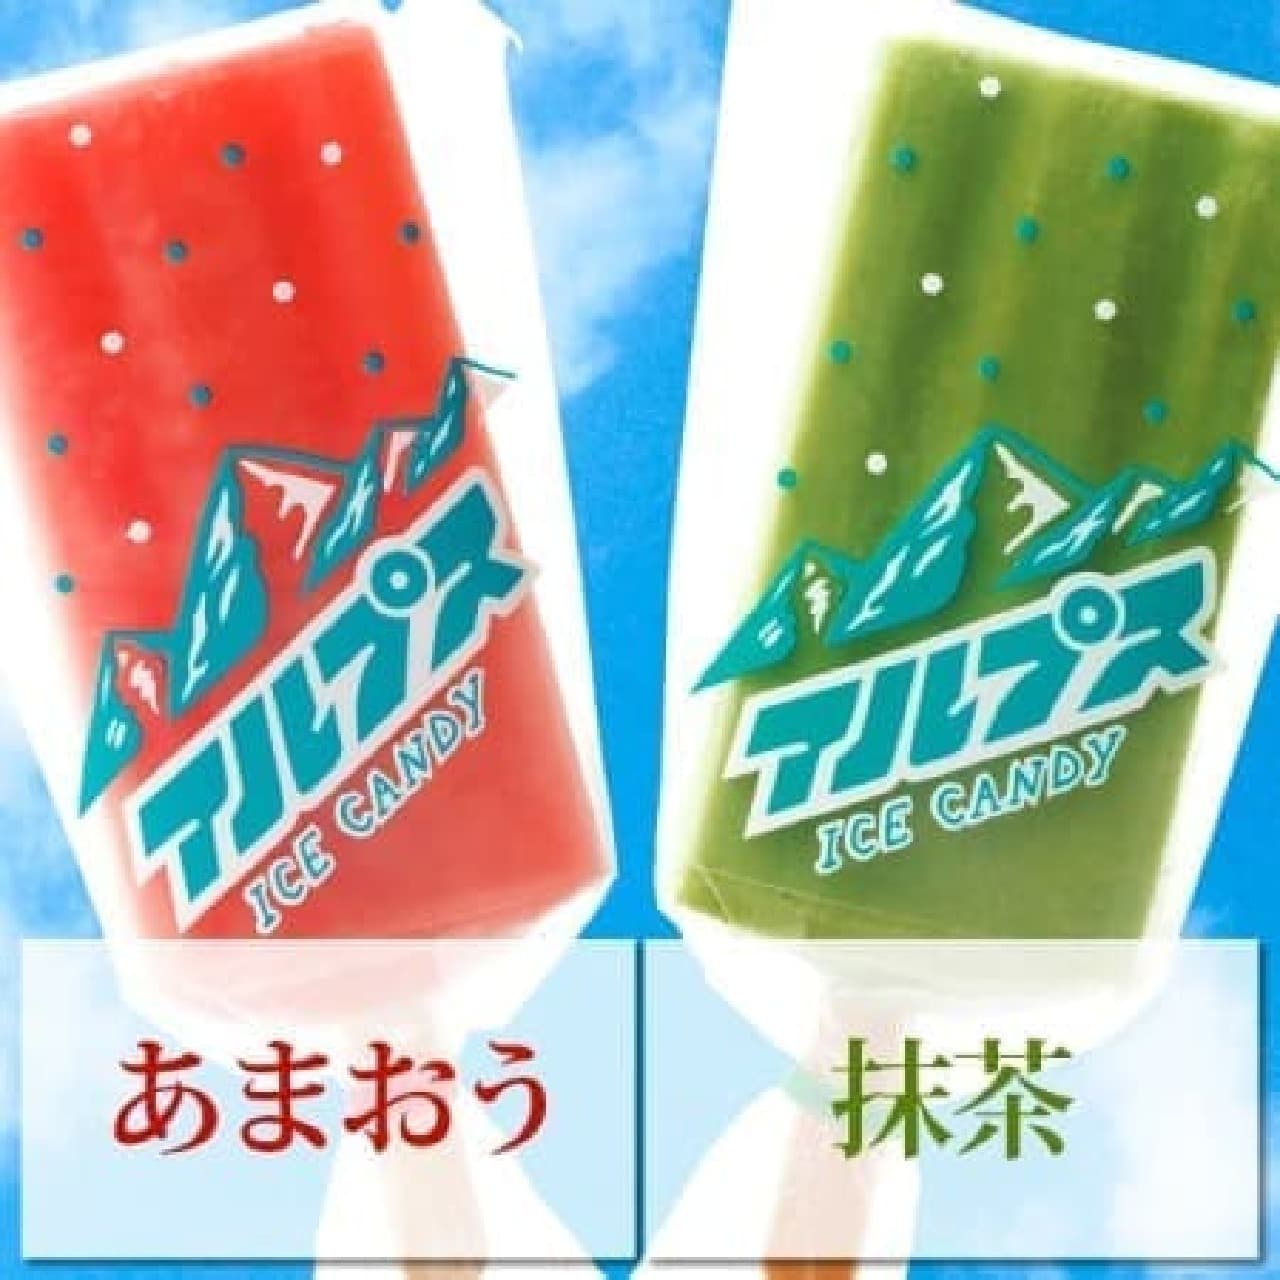 Fukuya "Alps Popsicle"